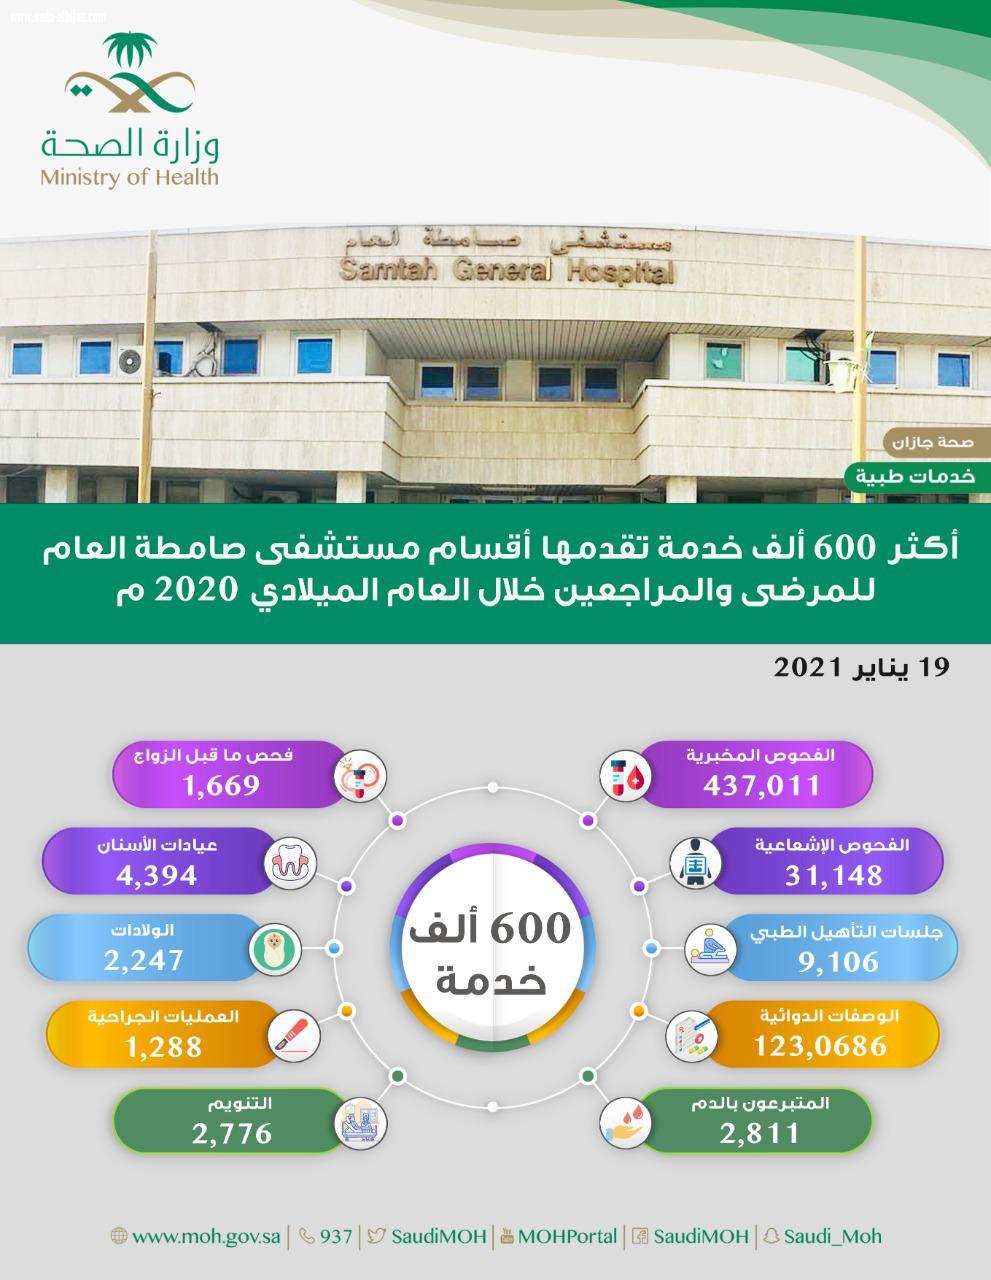 أكثر من600 ألف خدمة تقدمها أقسام المستشفى للمرضى والمراجعين إجراء 1288 عملية جراحية في مستشفى صامطة العام